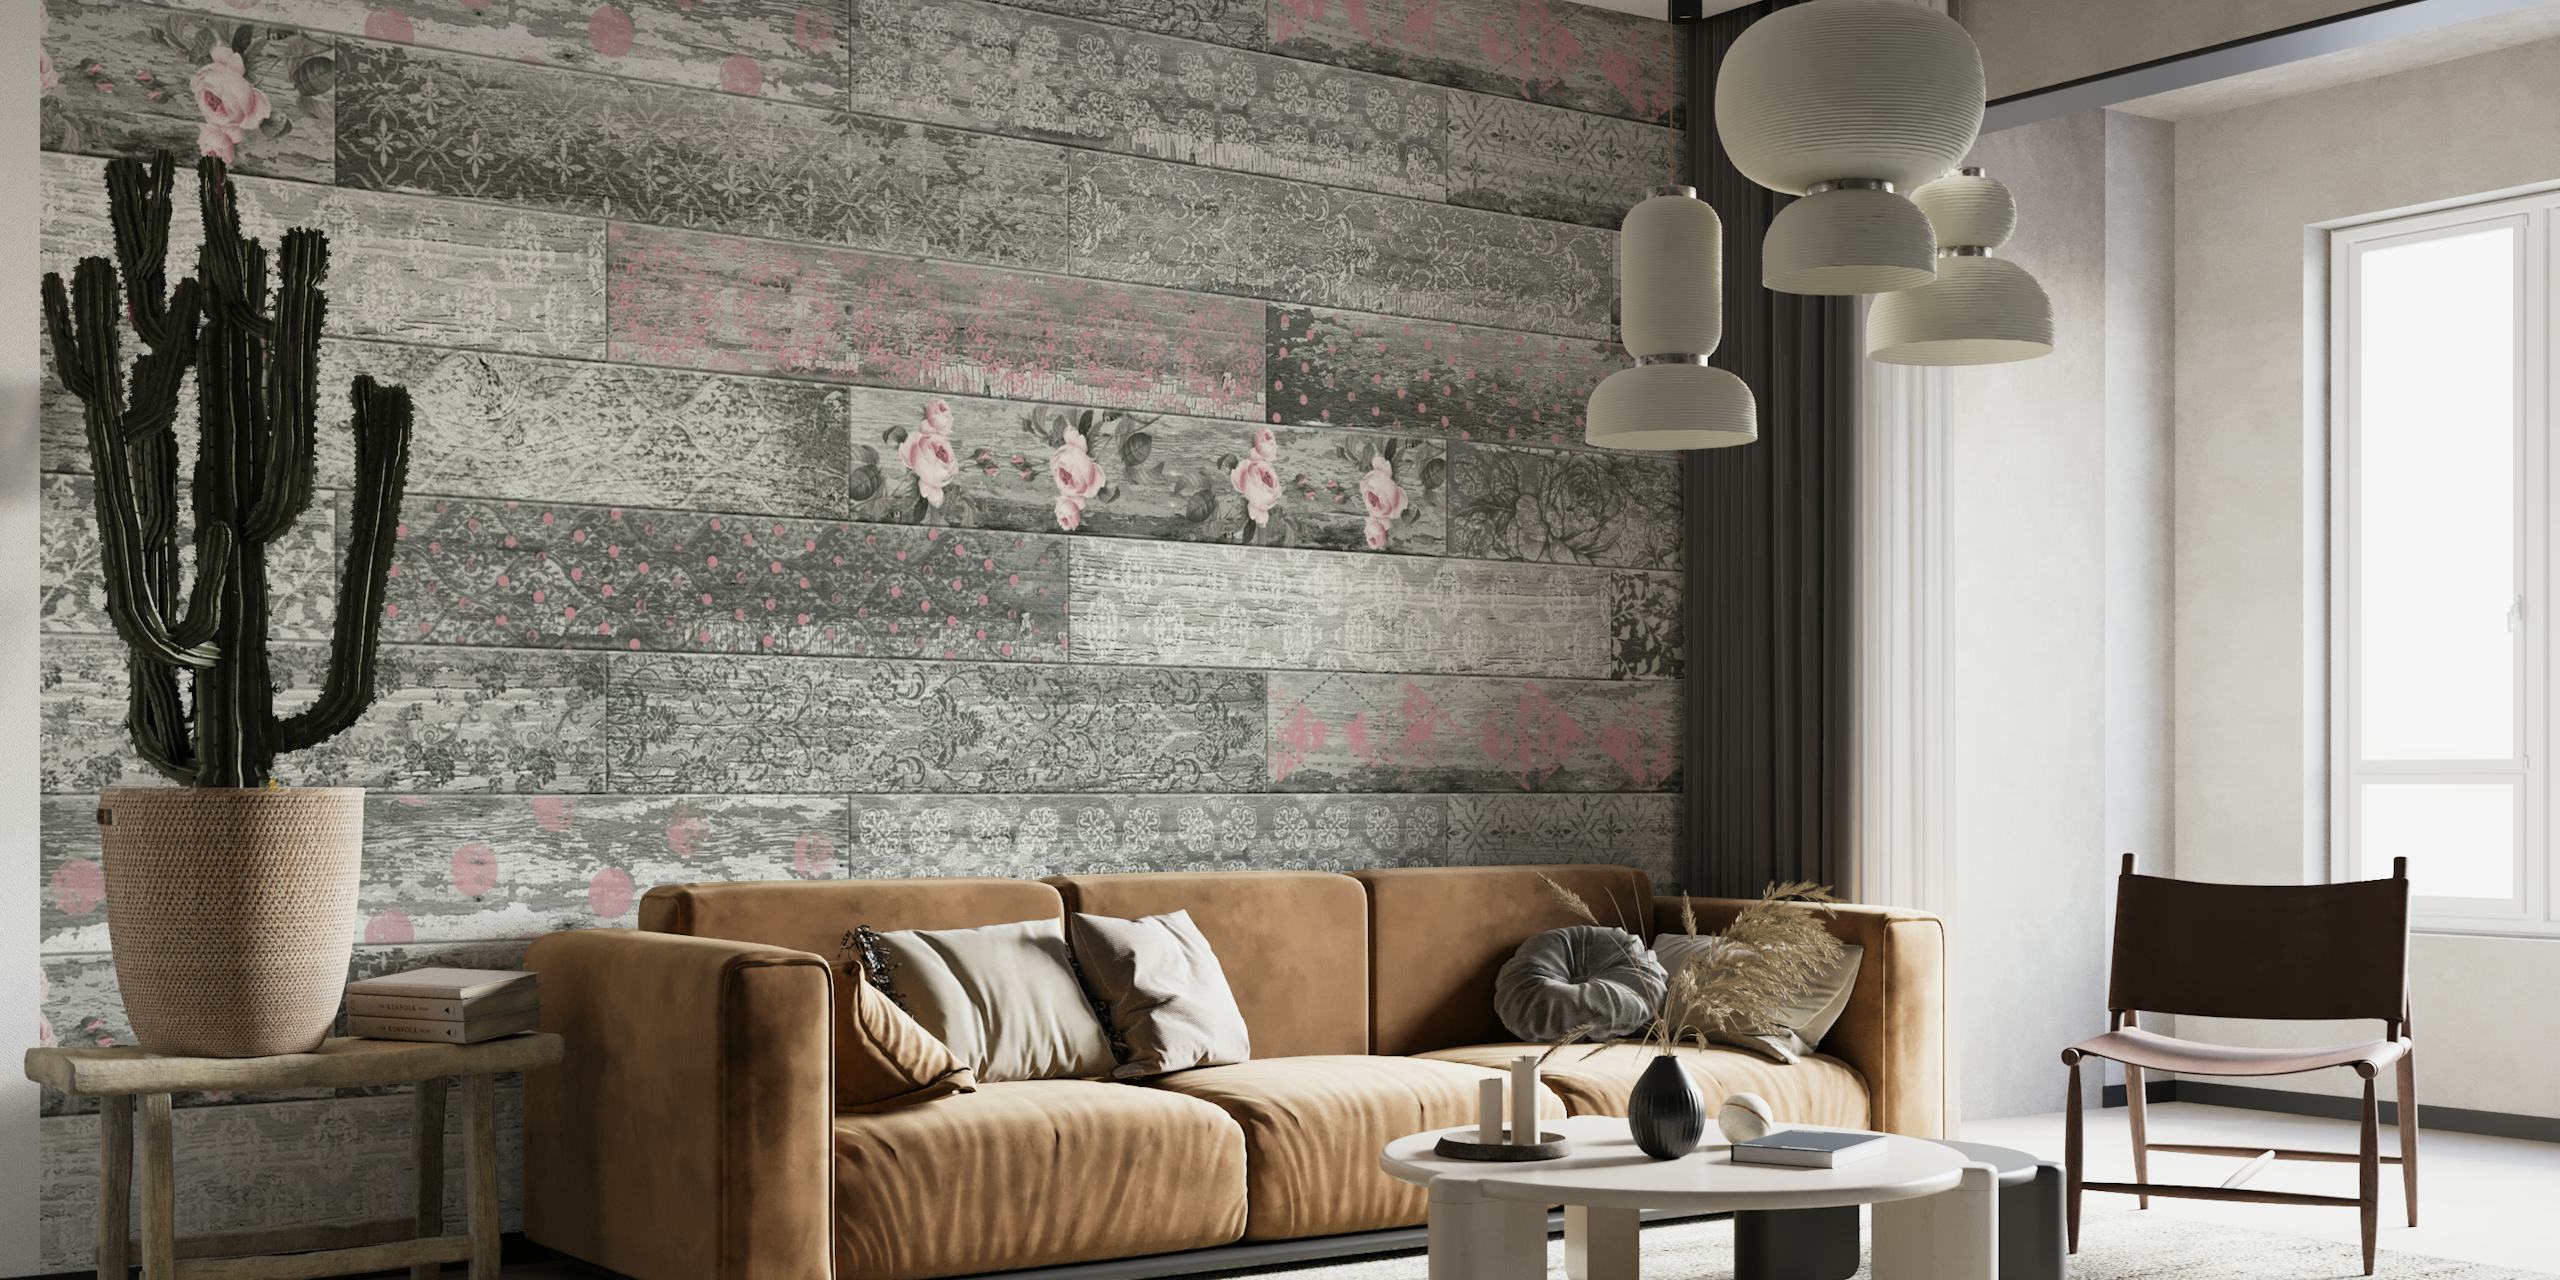 Tapeta ścienna Vintage Wood Tiles Pink Grey z iluzją teksturowanych paneli drewnianych w odcieniach różu i szarości